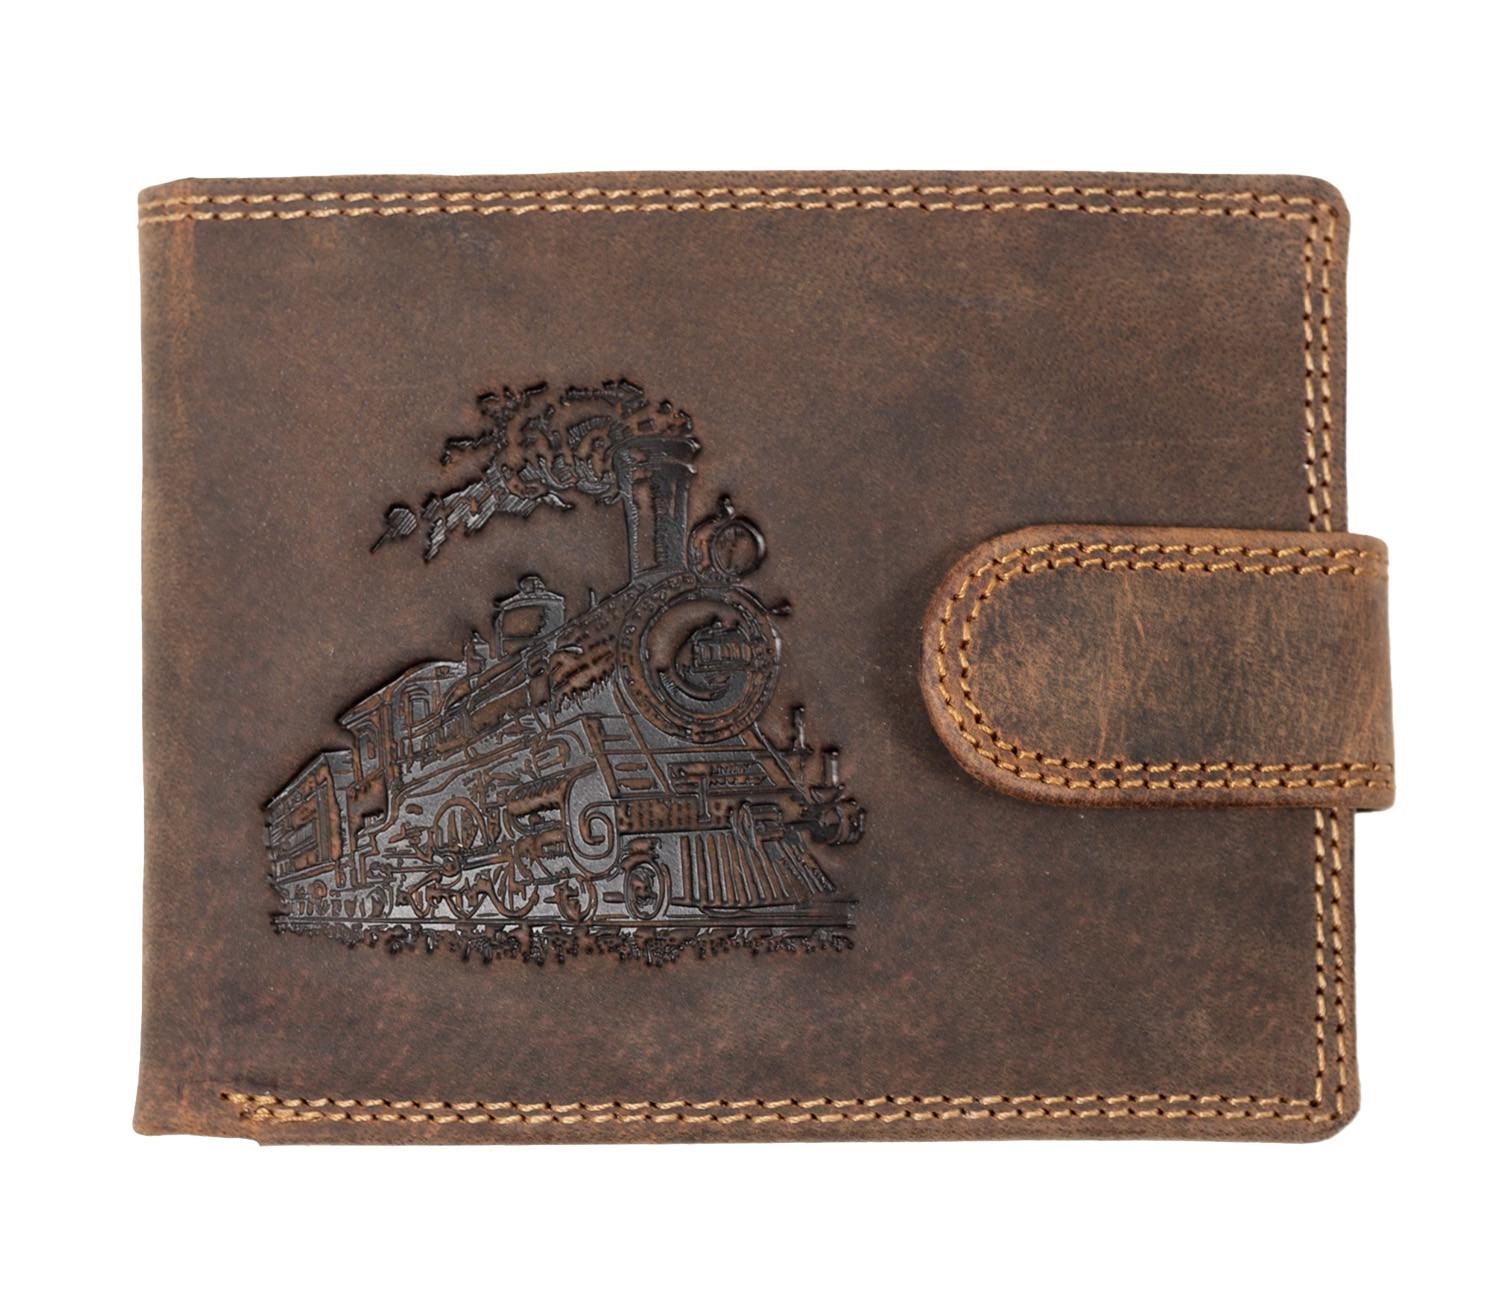 WILD Luxusní pánská peněženka s přezkou - VLAK - hnědá